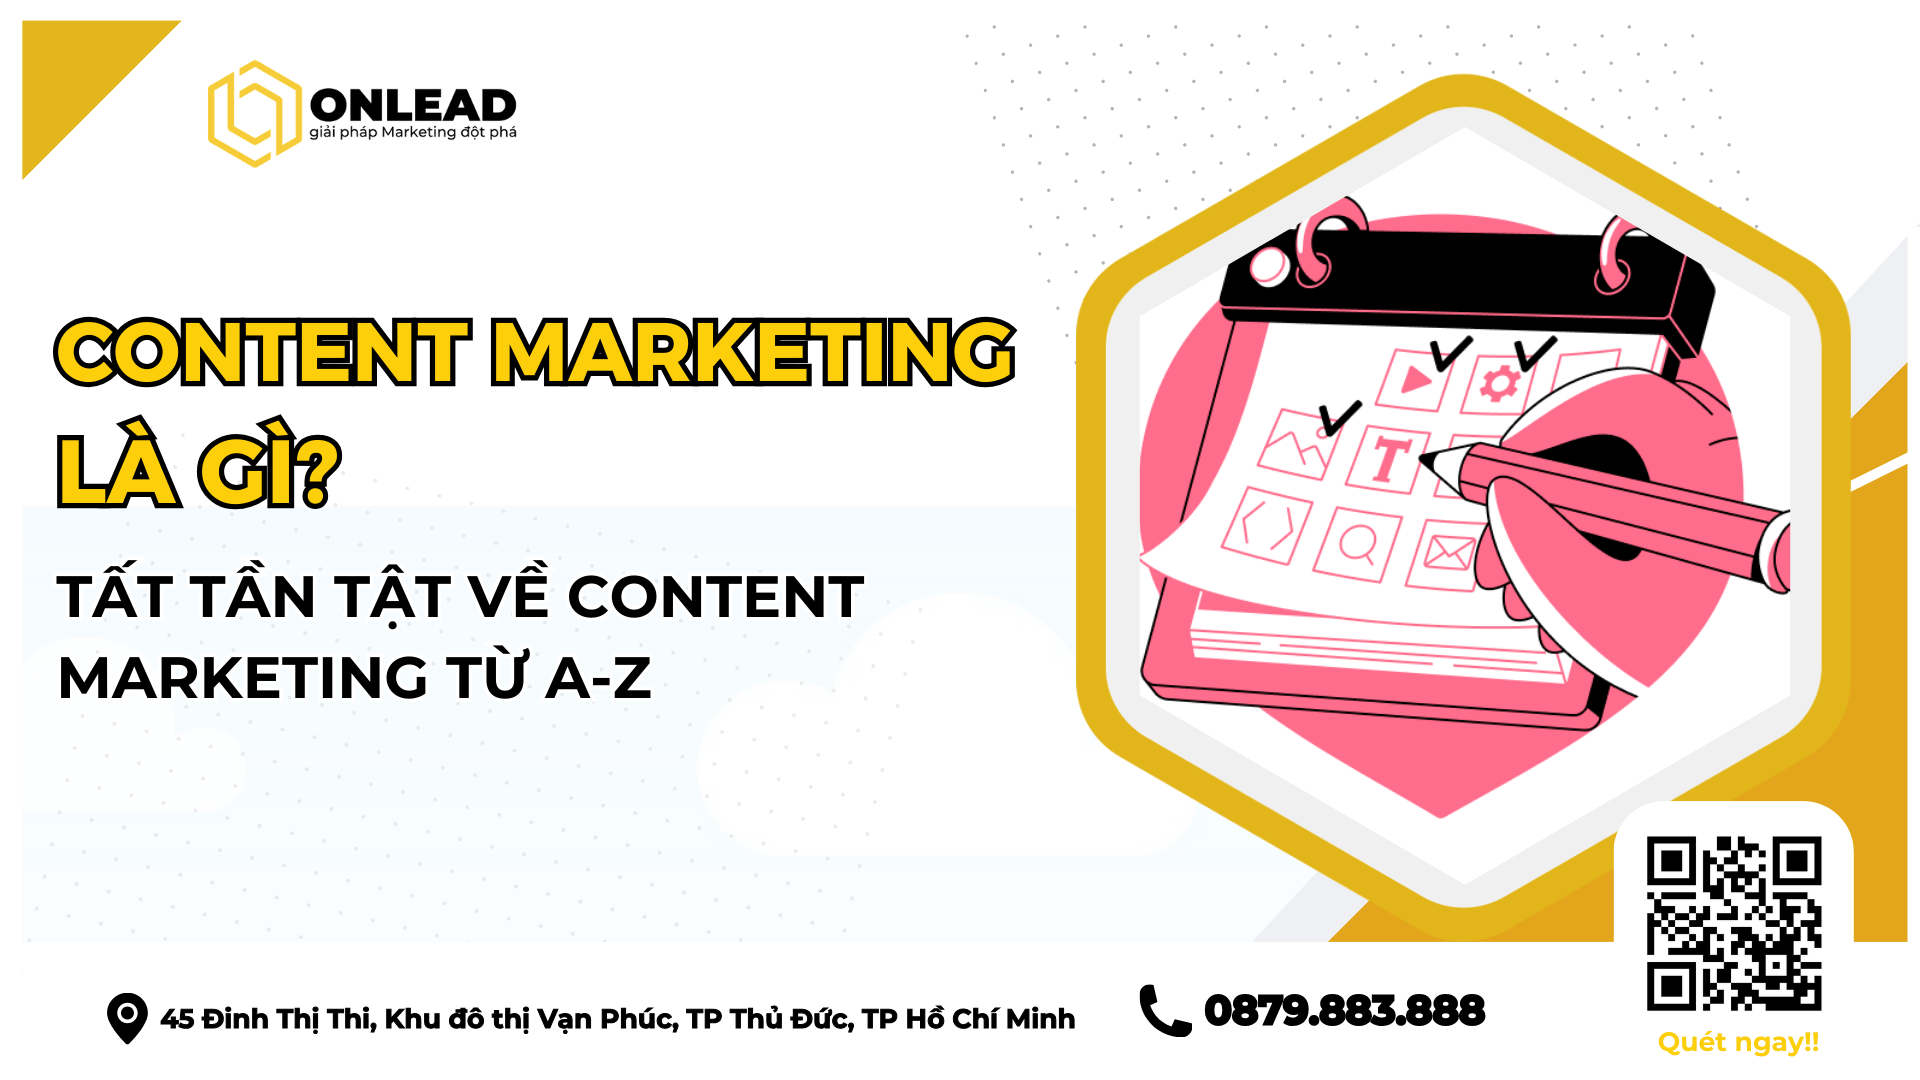 Content Marketing là gì? Tất tần tật về Content Marketing từ A-Z